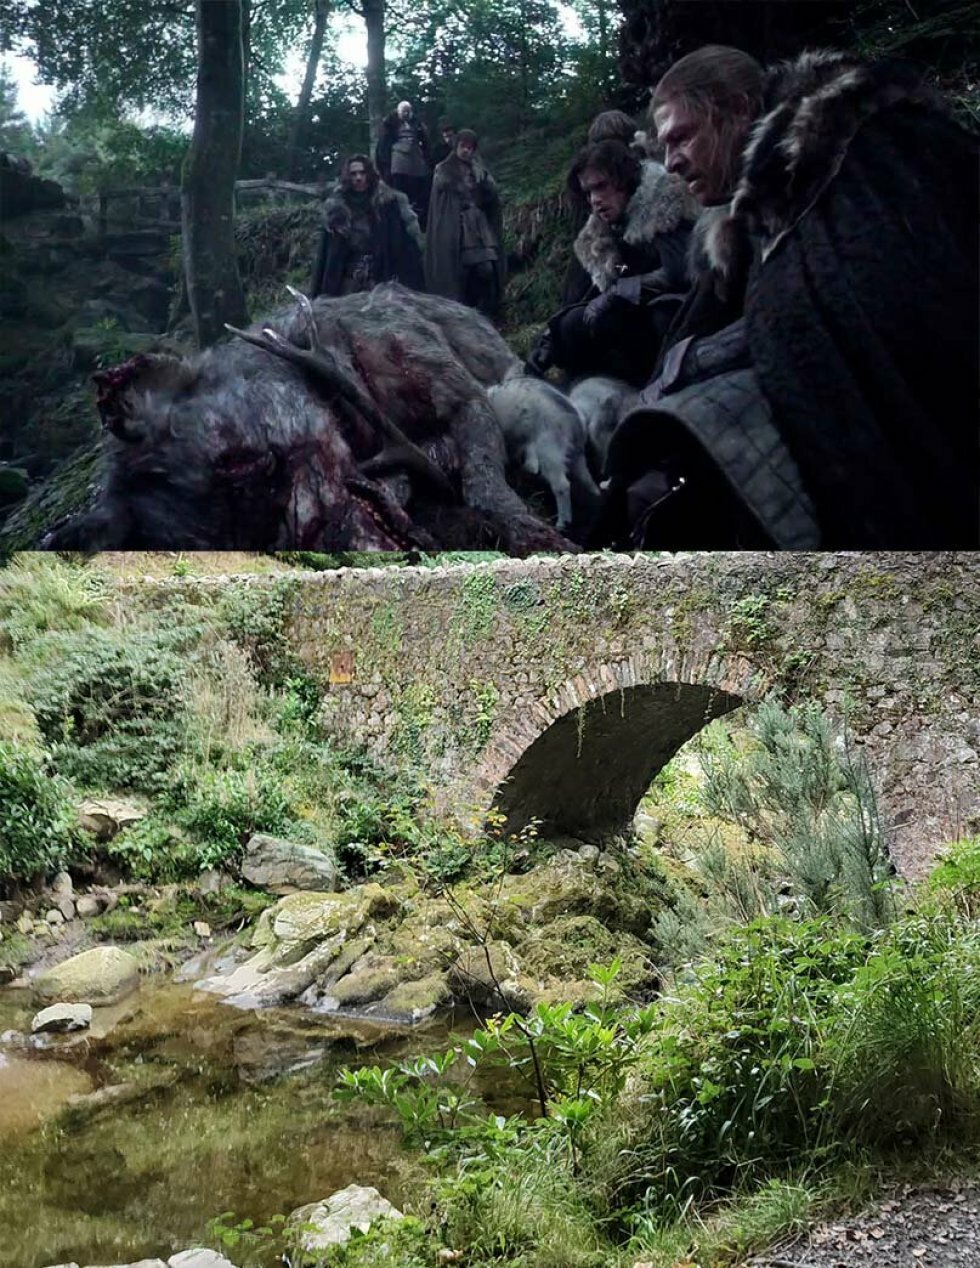 Øverst Game of Thrones S1, HBO - Nederst: Parnell Bridge, hvorved scenerne blev optaget - Rejseguide: Nordirland den ultimative Game of Thrones-destination